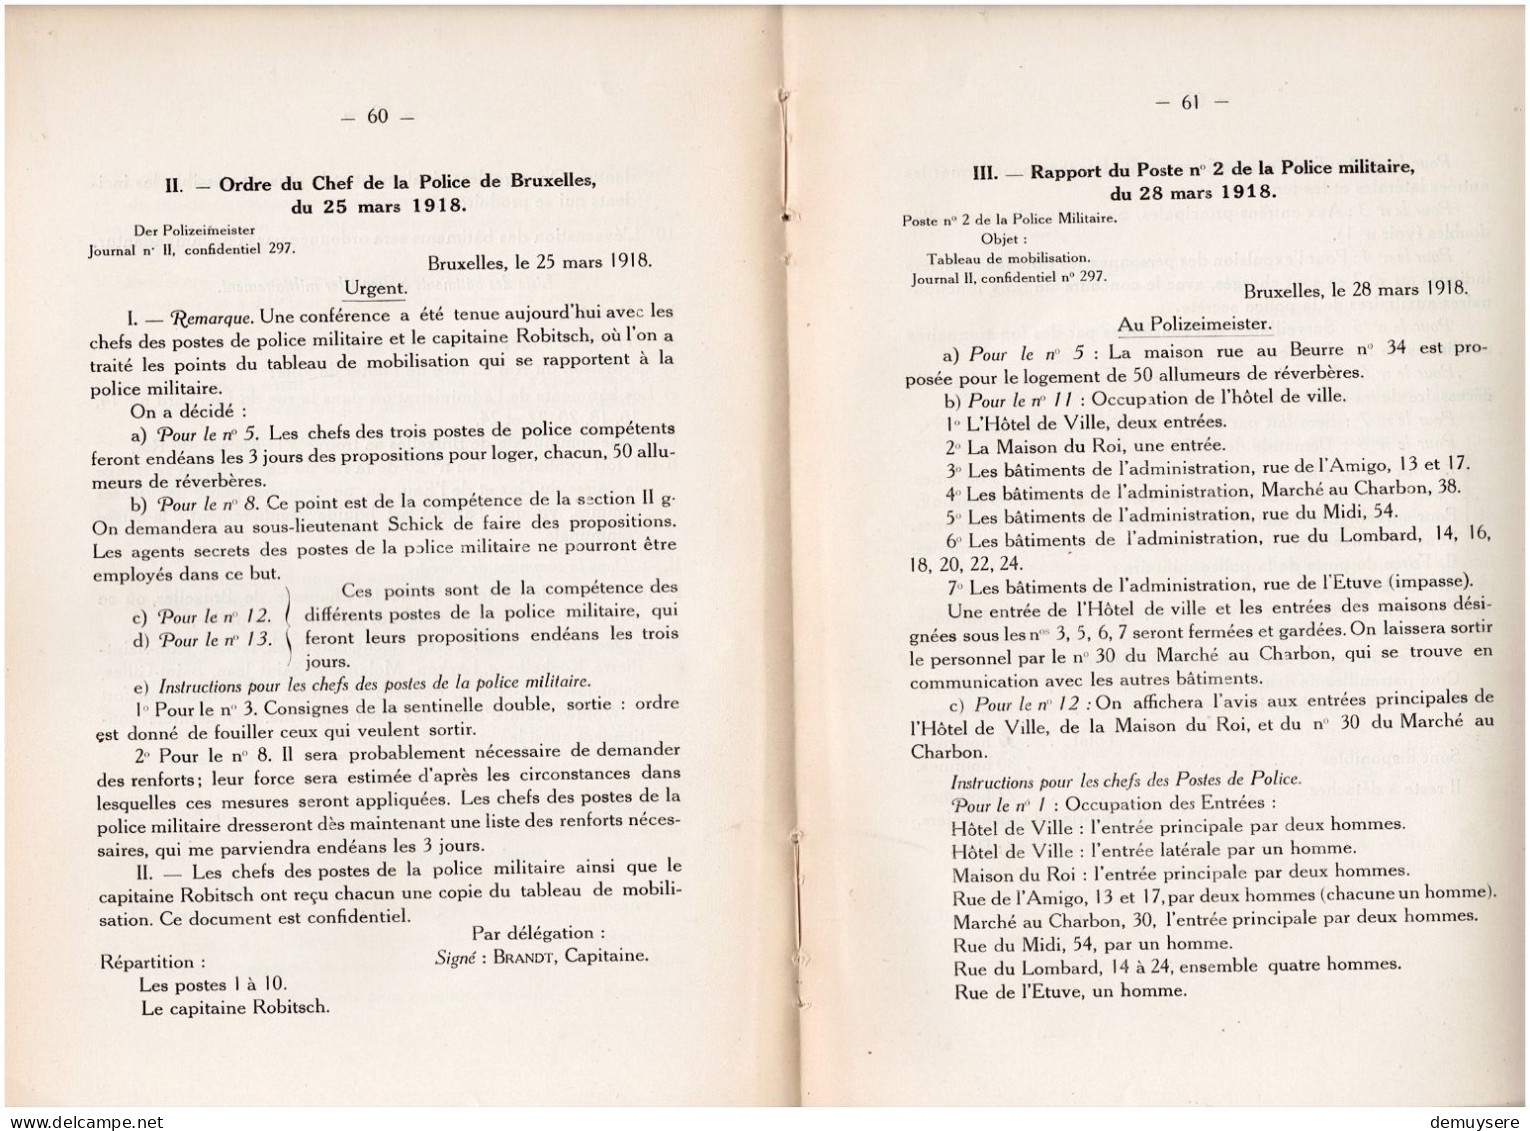 0404 1 - BULLETIN DE LA COMMISSION DES ARCHIVES DE LA GUERRE 1924 - 104 PAGES - Francés